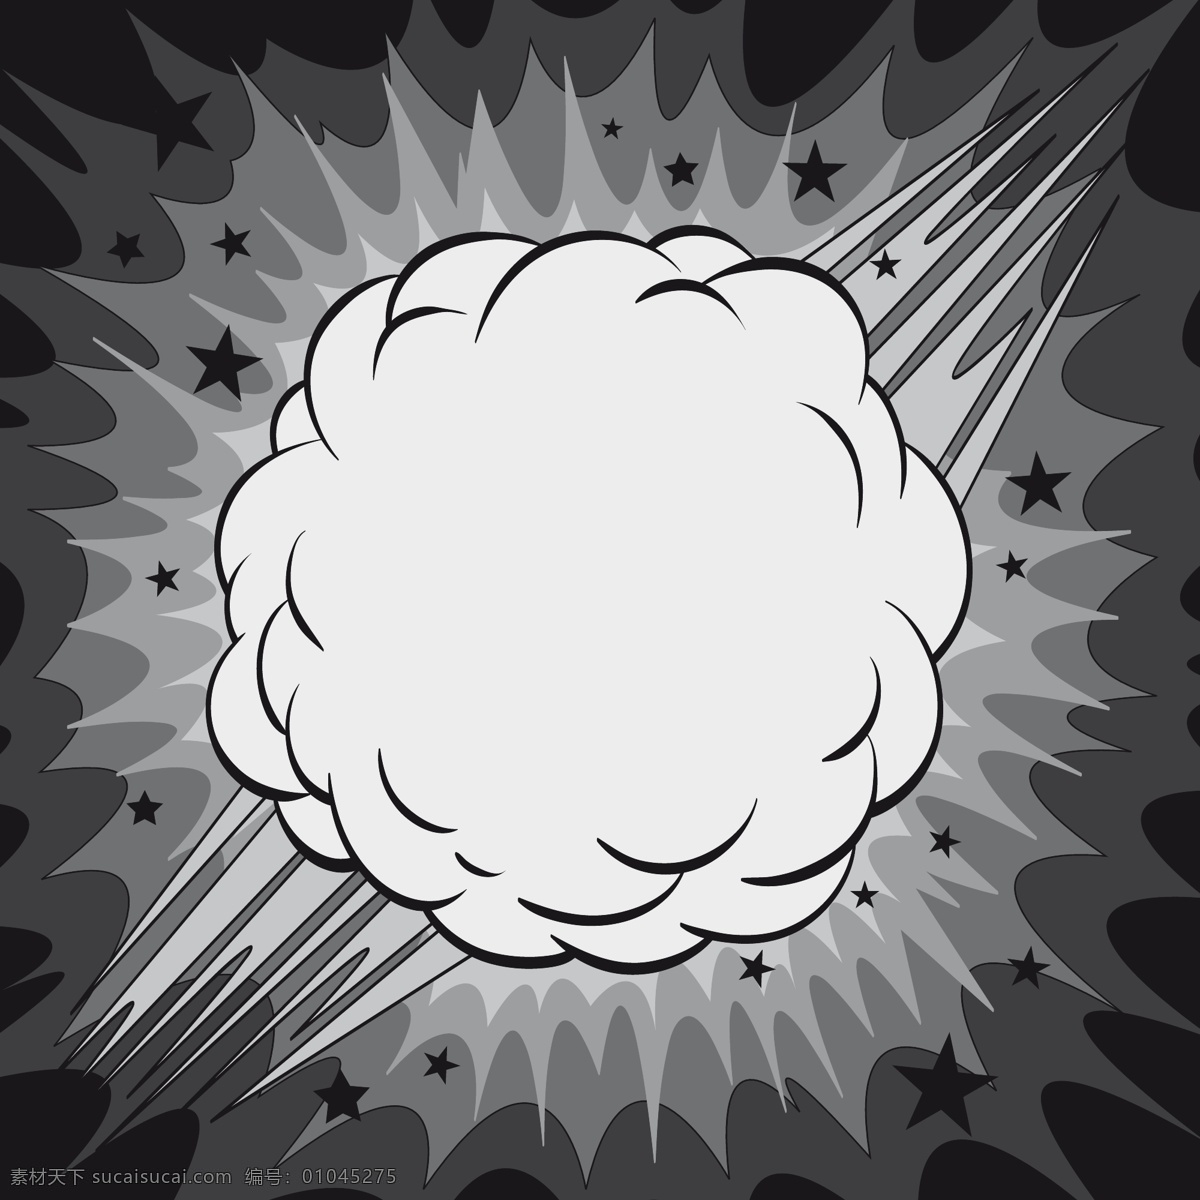 灰色 漫画式 爆炸 矢量 装饰 卡通 漫画 图 核爆炸 蘑菇云 原子弹爆炸 核武器 爆炸漫画 底纹背景 底纹边框 矢量素材